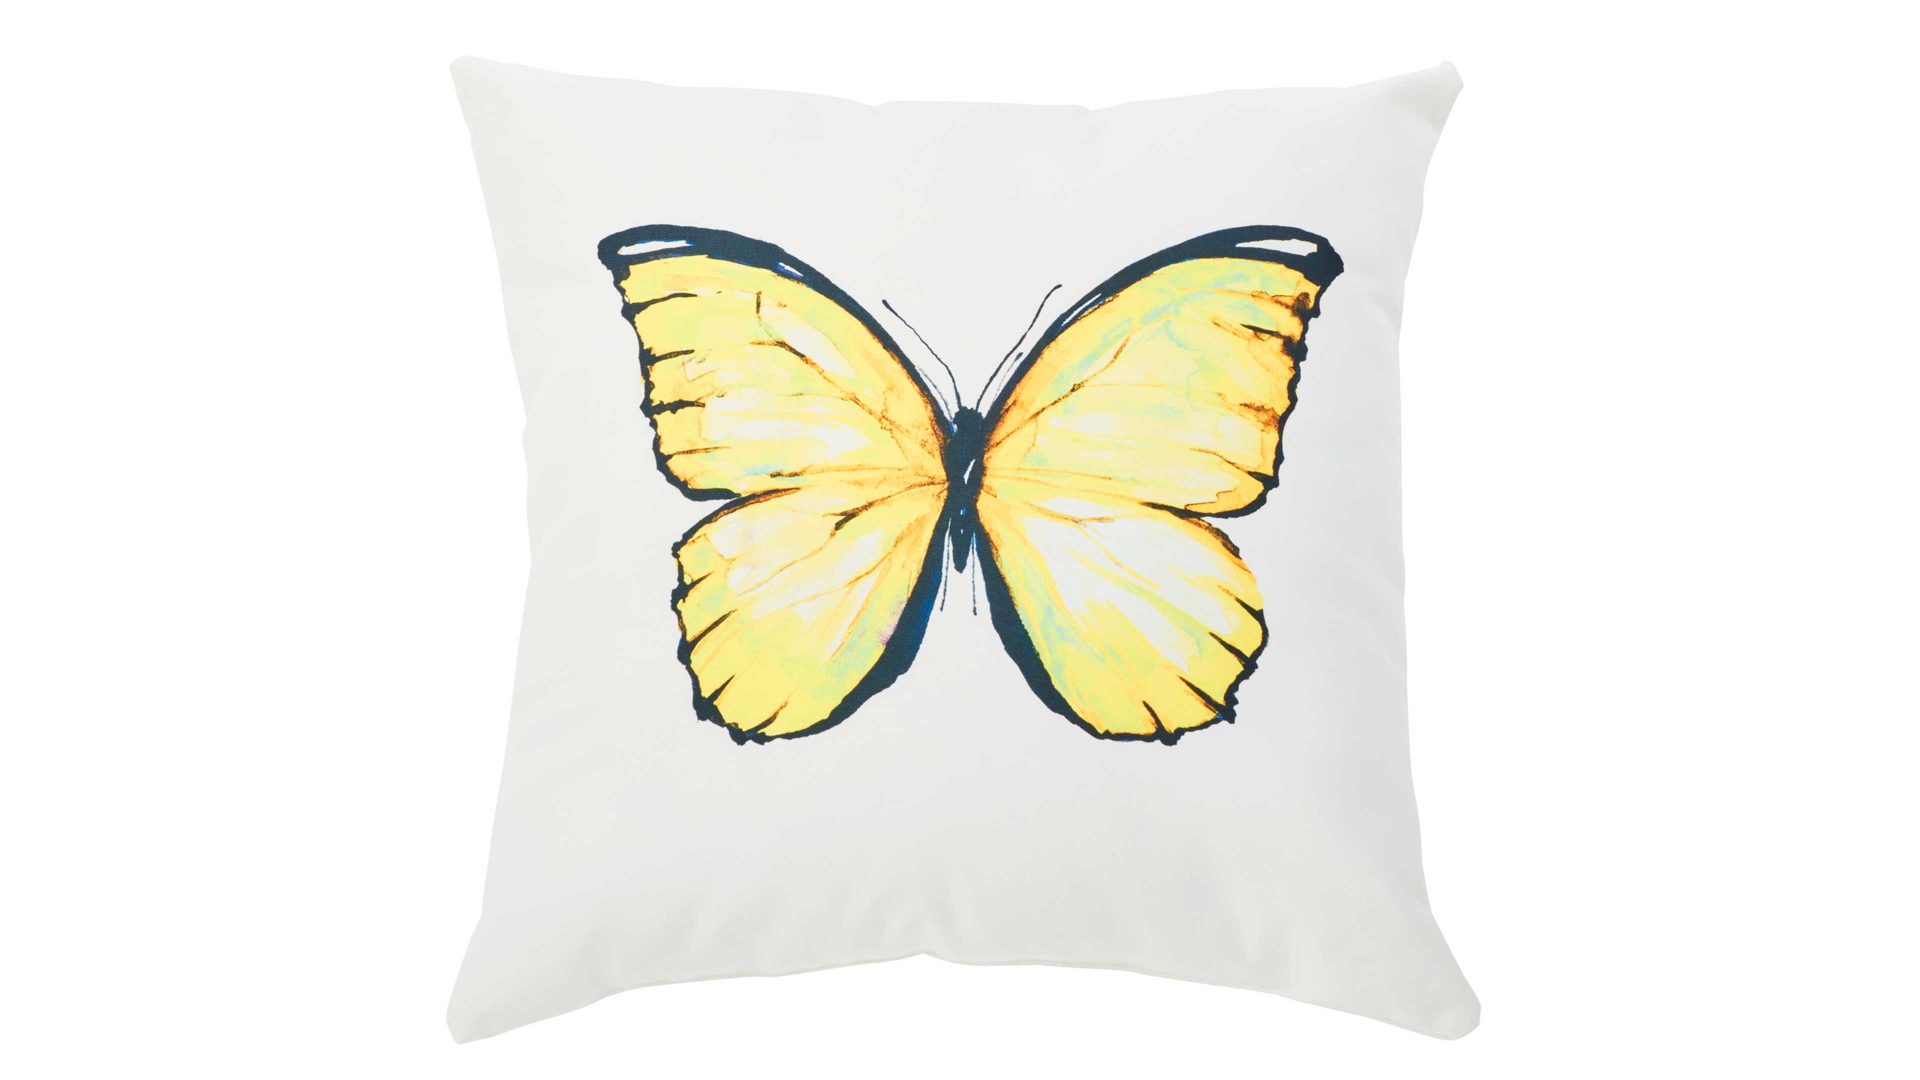 Einzelkissen Interliving BEST BUDDYS! aus Kunstfaser in Gelb Interliving BEST BUDDYS Kissen Cushion Outside Butterfly Dessin Schmetterling– ca. 65 x 65 cm